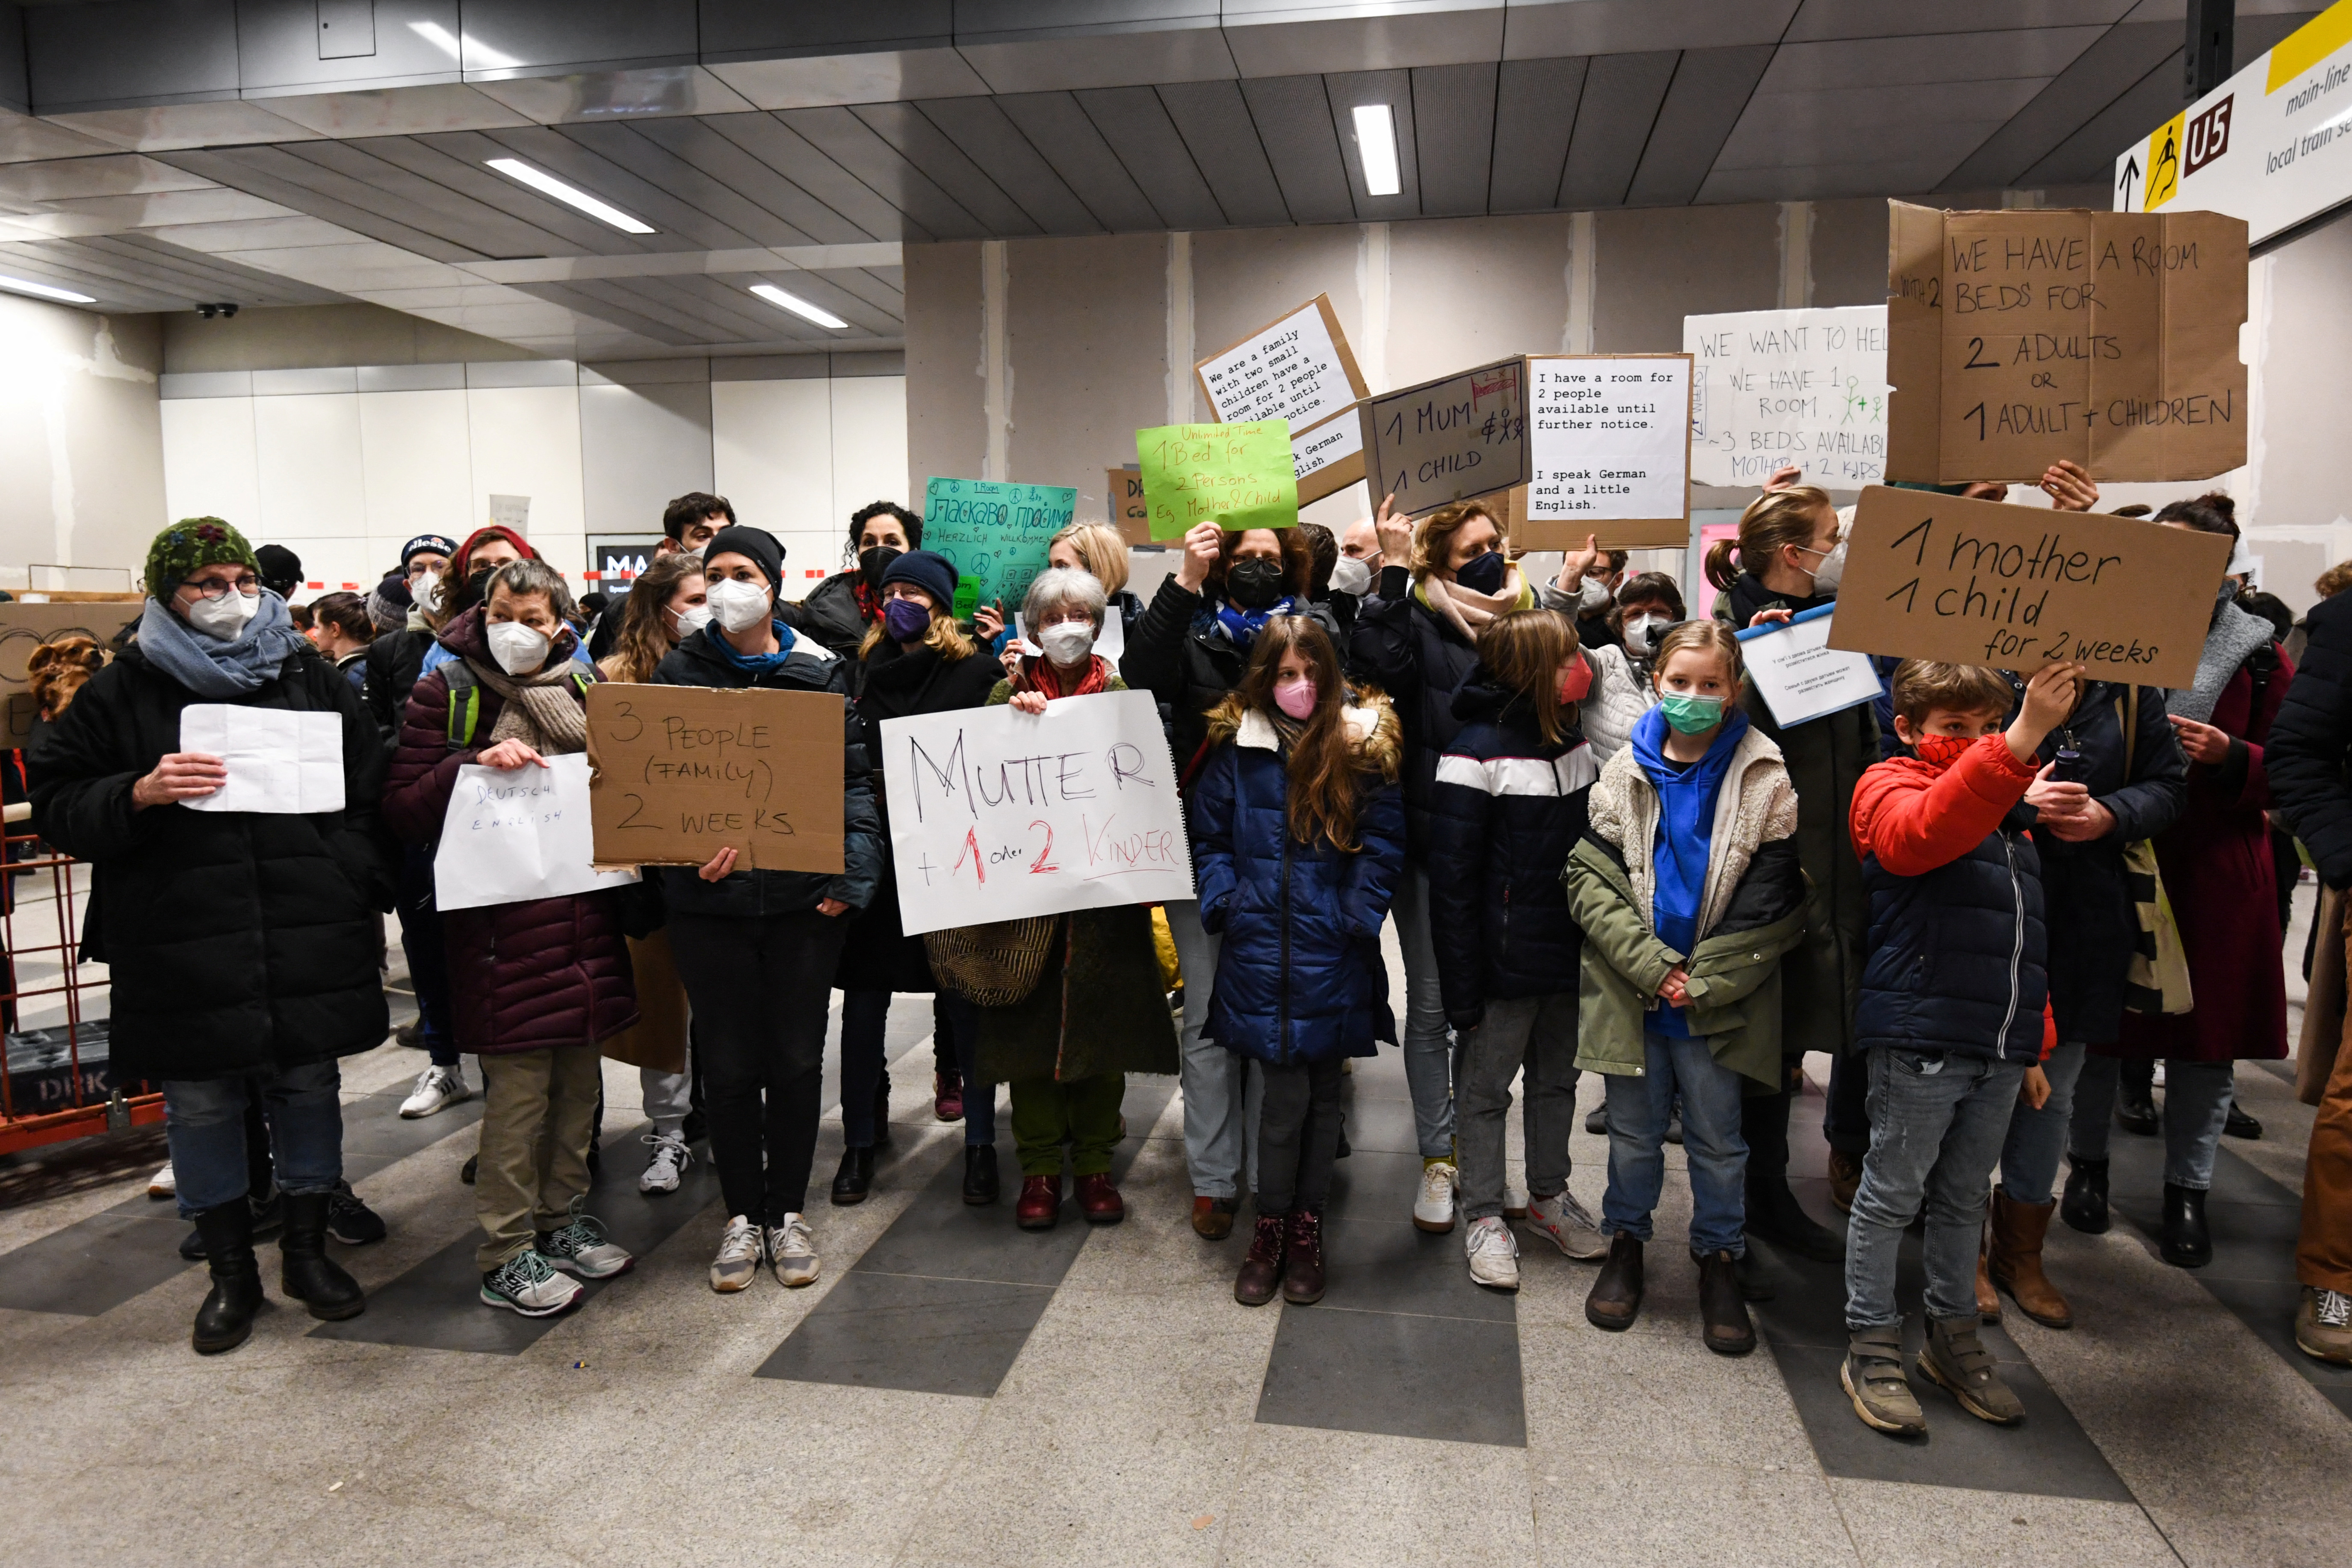 Refugees fleeing from Ukraine arrive in Berlin